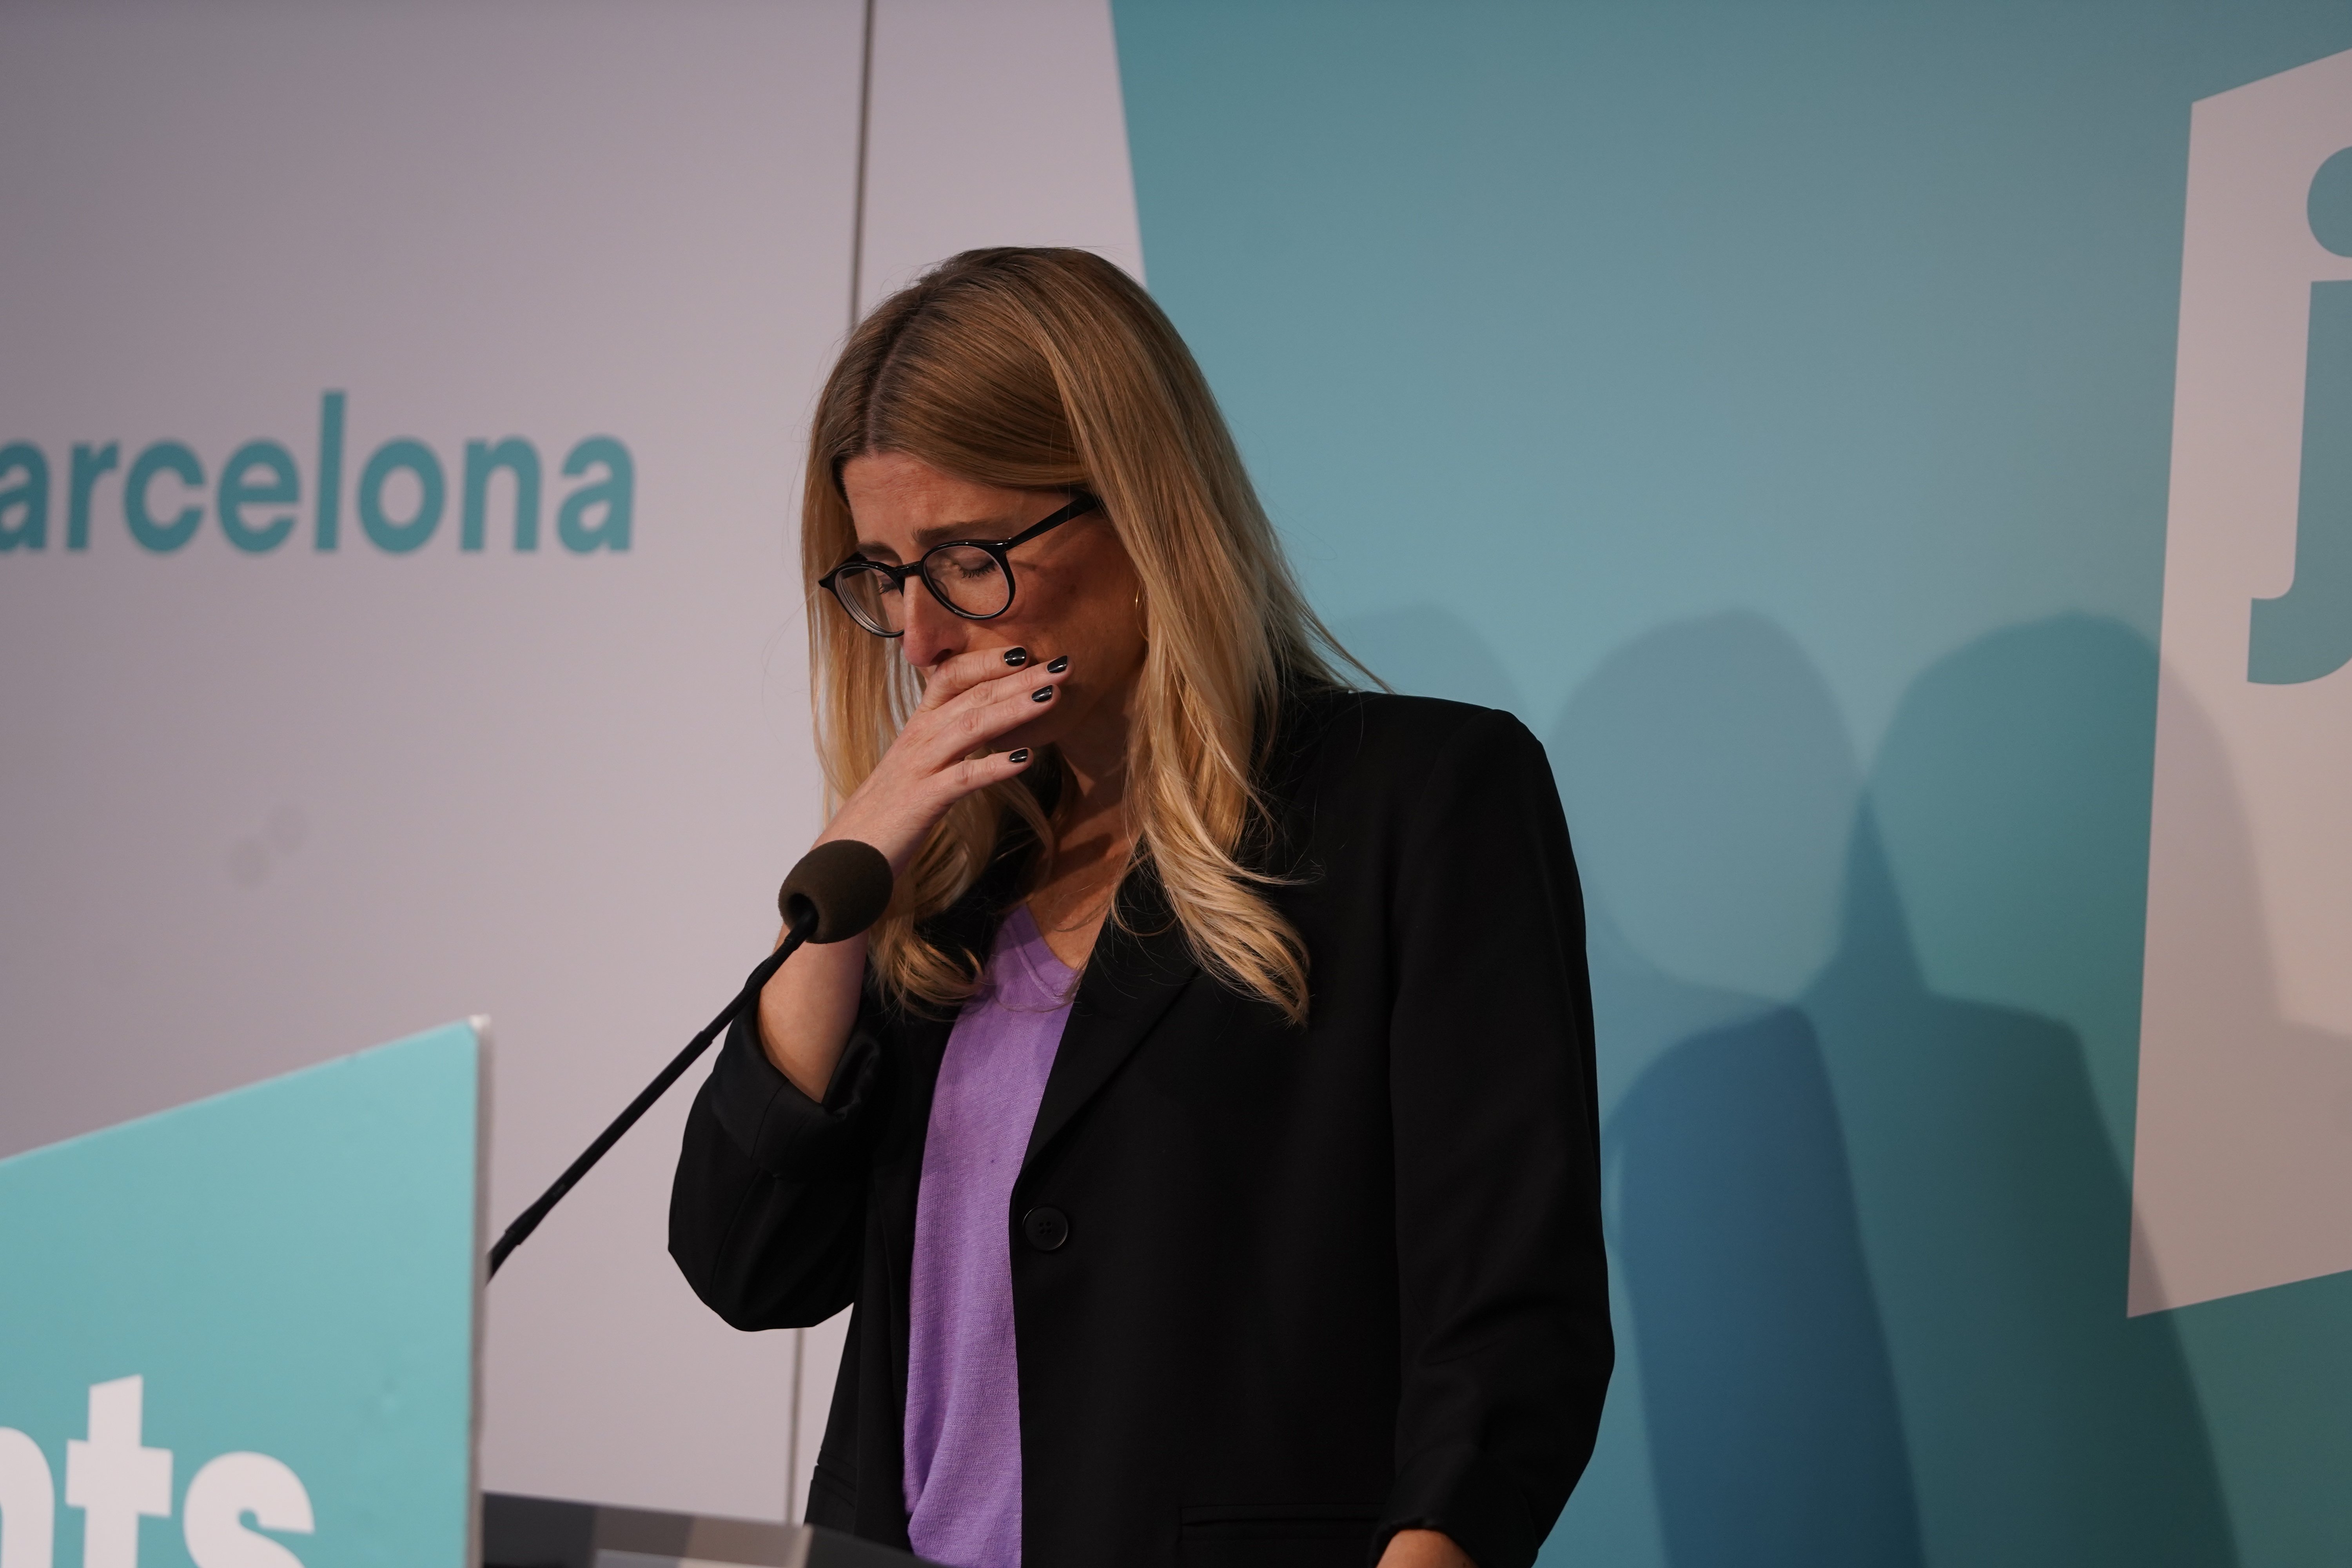 Junts politician Elsa Artadi leaves active politics: "I can't continue"